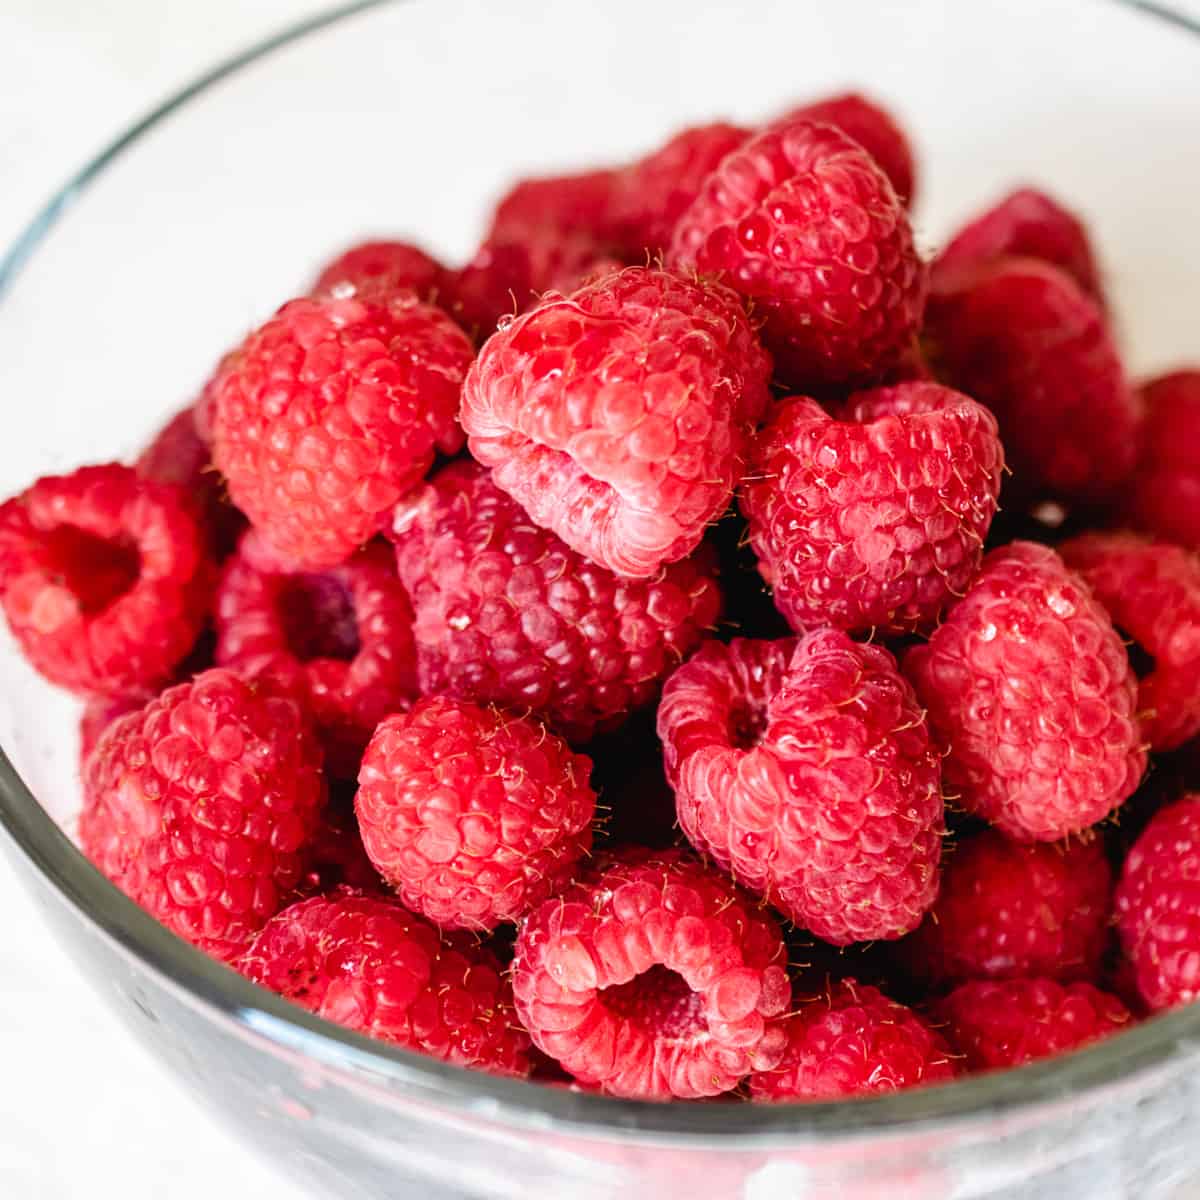 A glass bowl of fresh raspberries.